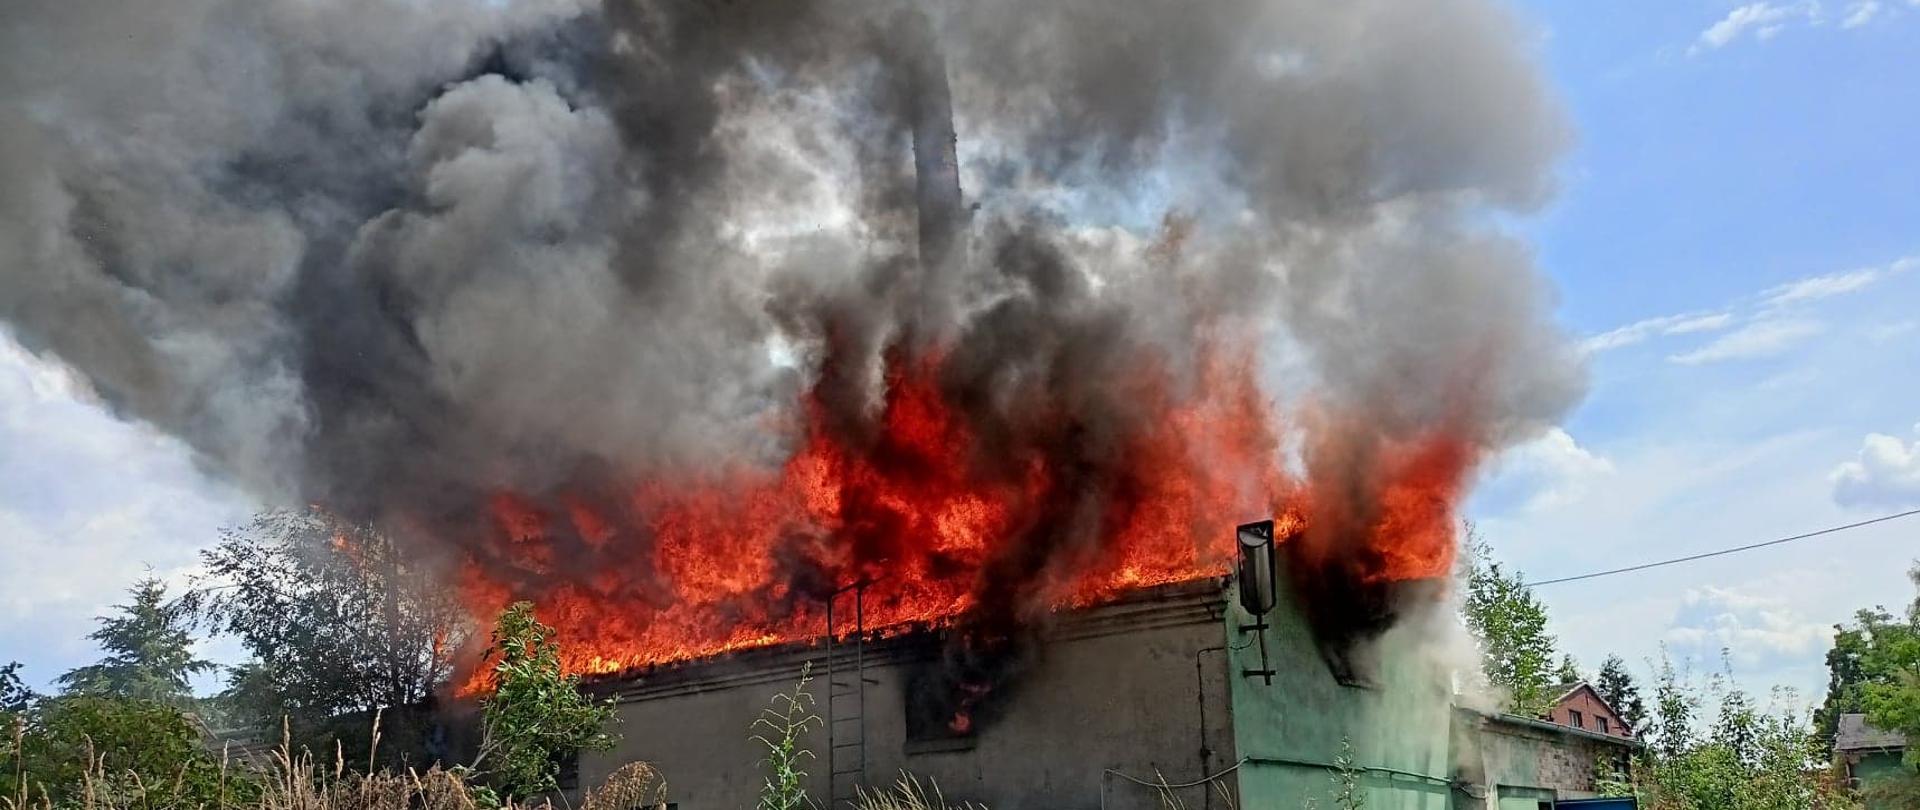 Zdjęcie przedstawia pożar budynku. Ogień wychodzi przez otwory okienne, pali się dach obiektu.